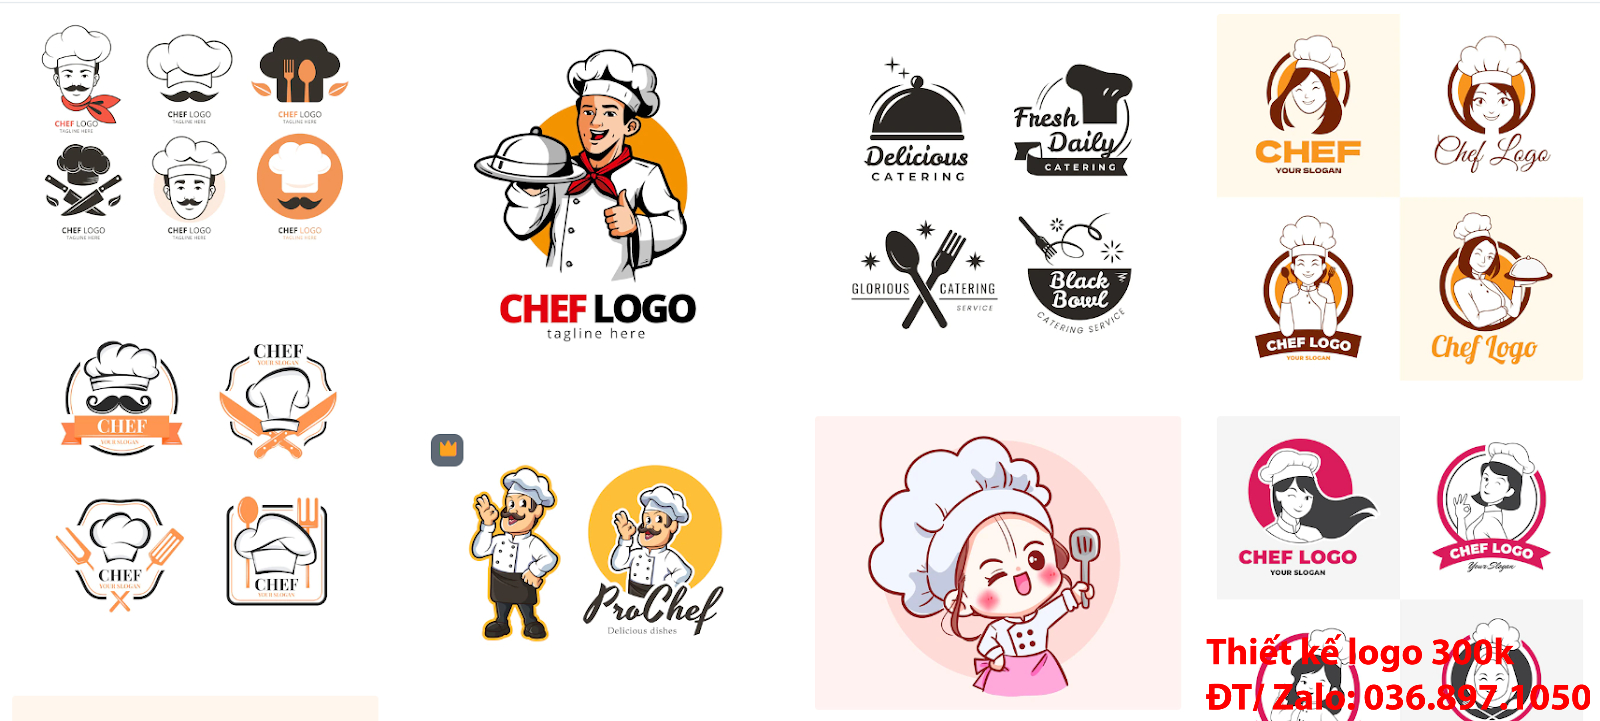 Công ty nhận thiết kế lô gô online giá rẻ chất lượng cao tại Tp Hồ Chí Minh về chủ đề Mẫu logo đầu bếp chef cook đẹp